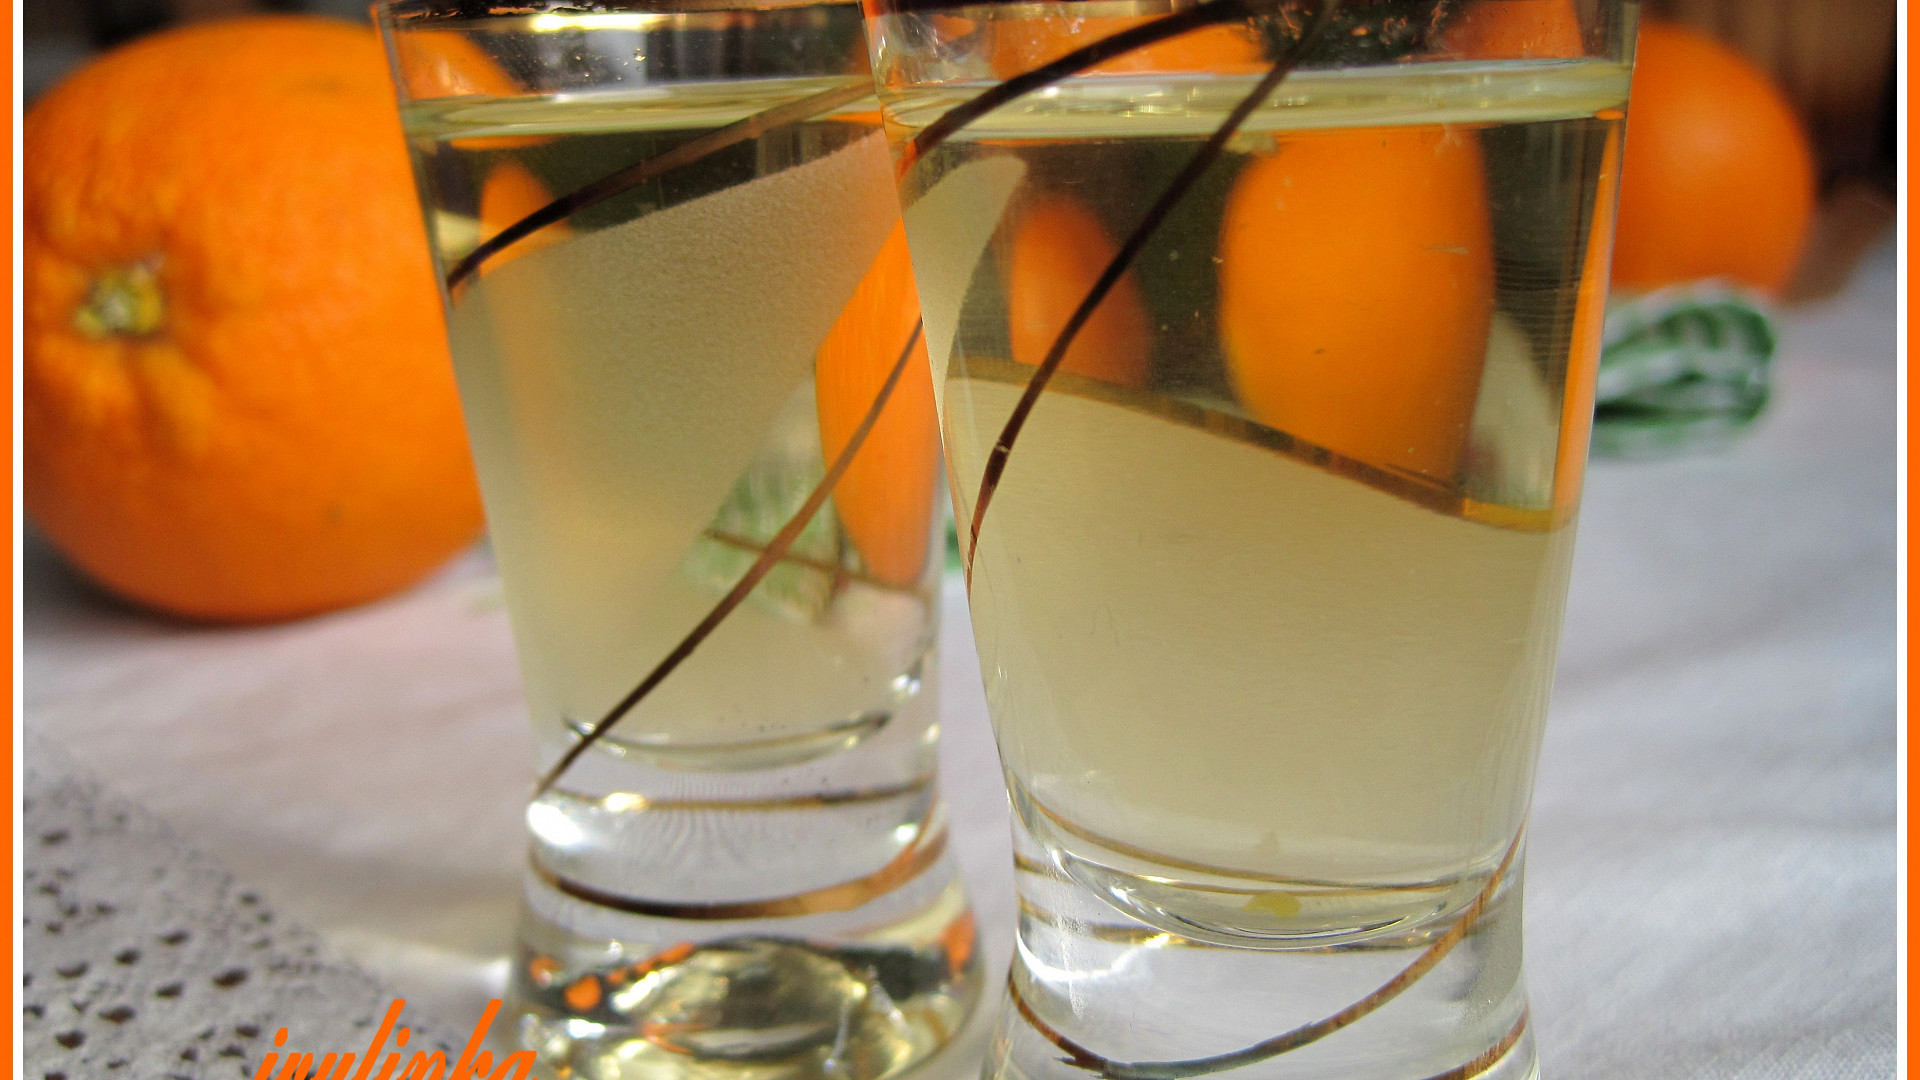 Pomerančový likér ze slivovice